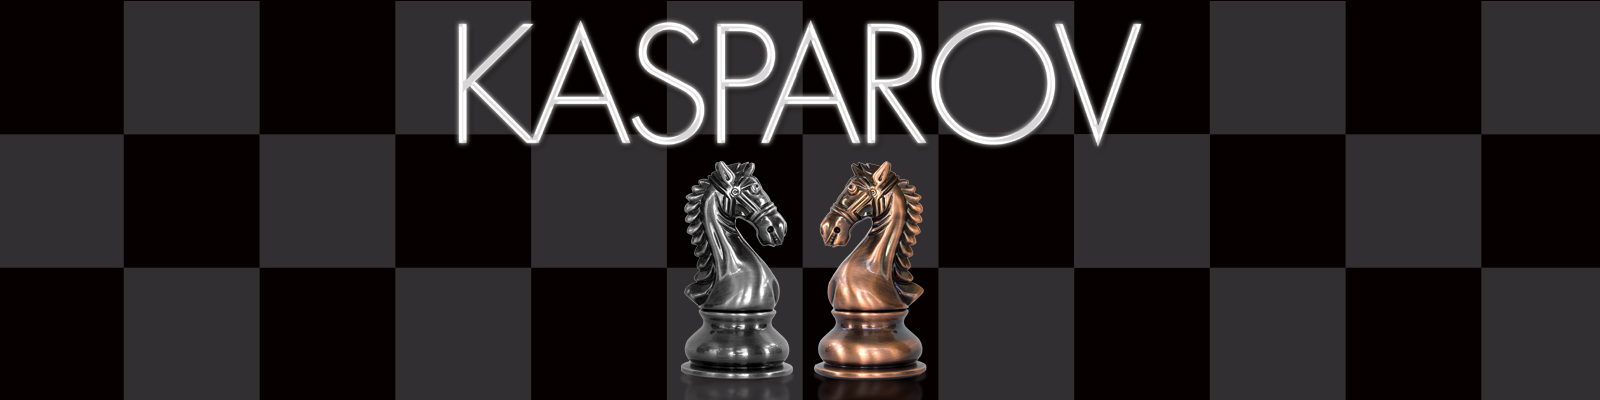 KASPAROV International Master Chess Set 